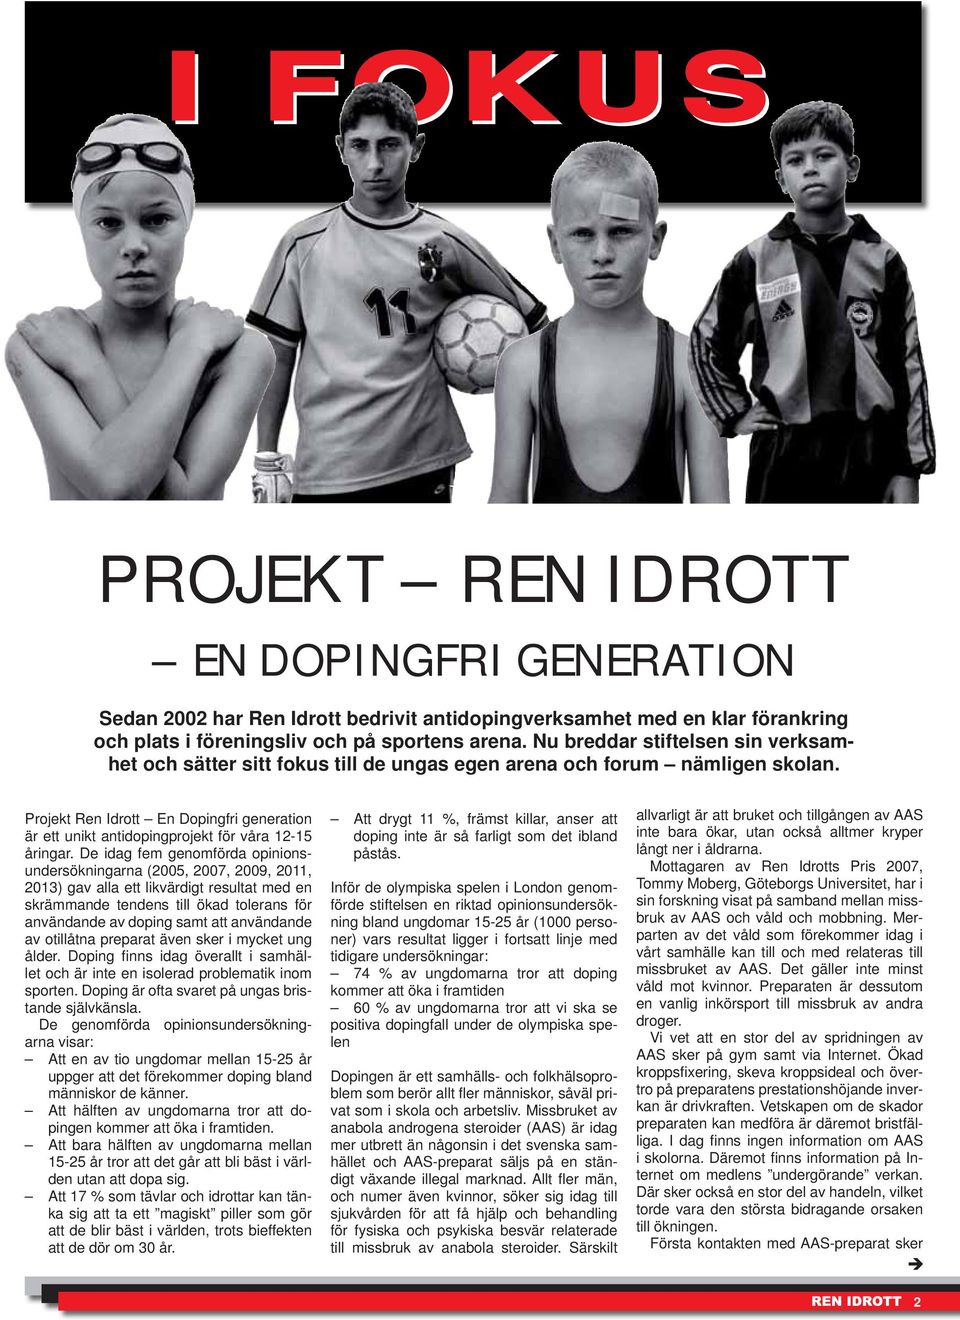 Projekt Ren Idrott En Dopingfri generation är ett unikt antidopingprojekt för våra 12-15 åringar.